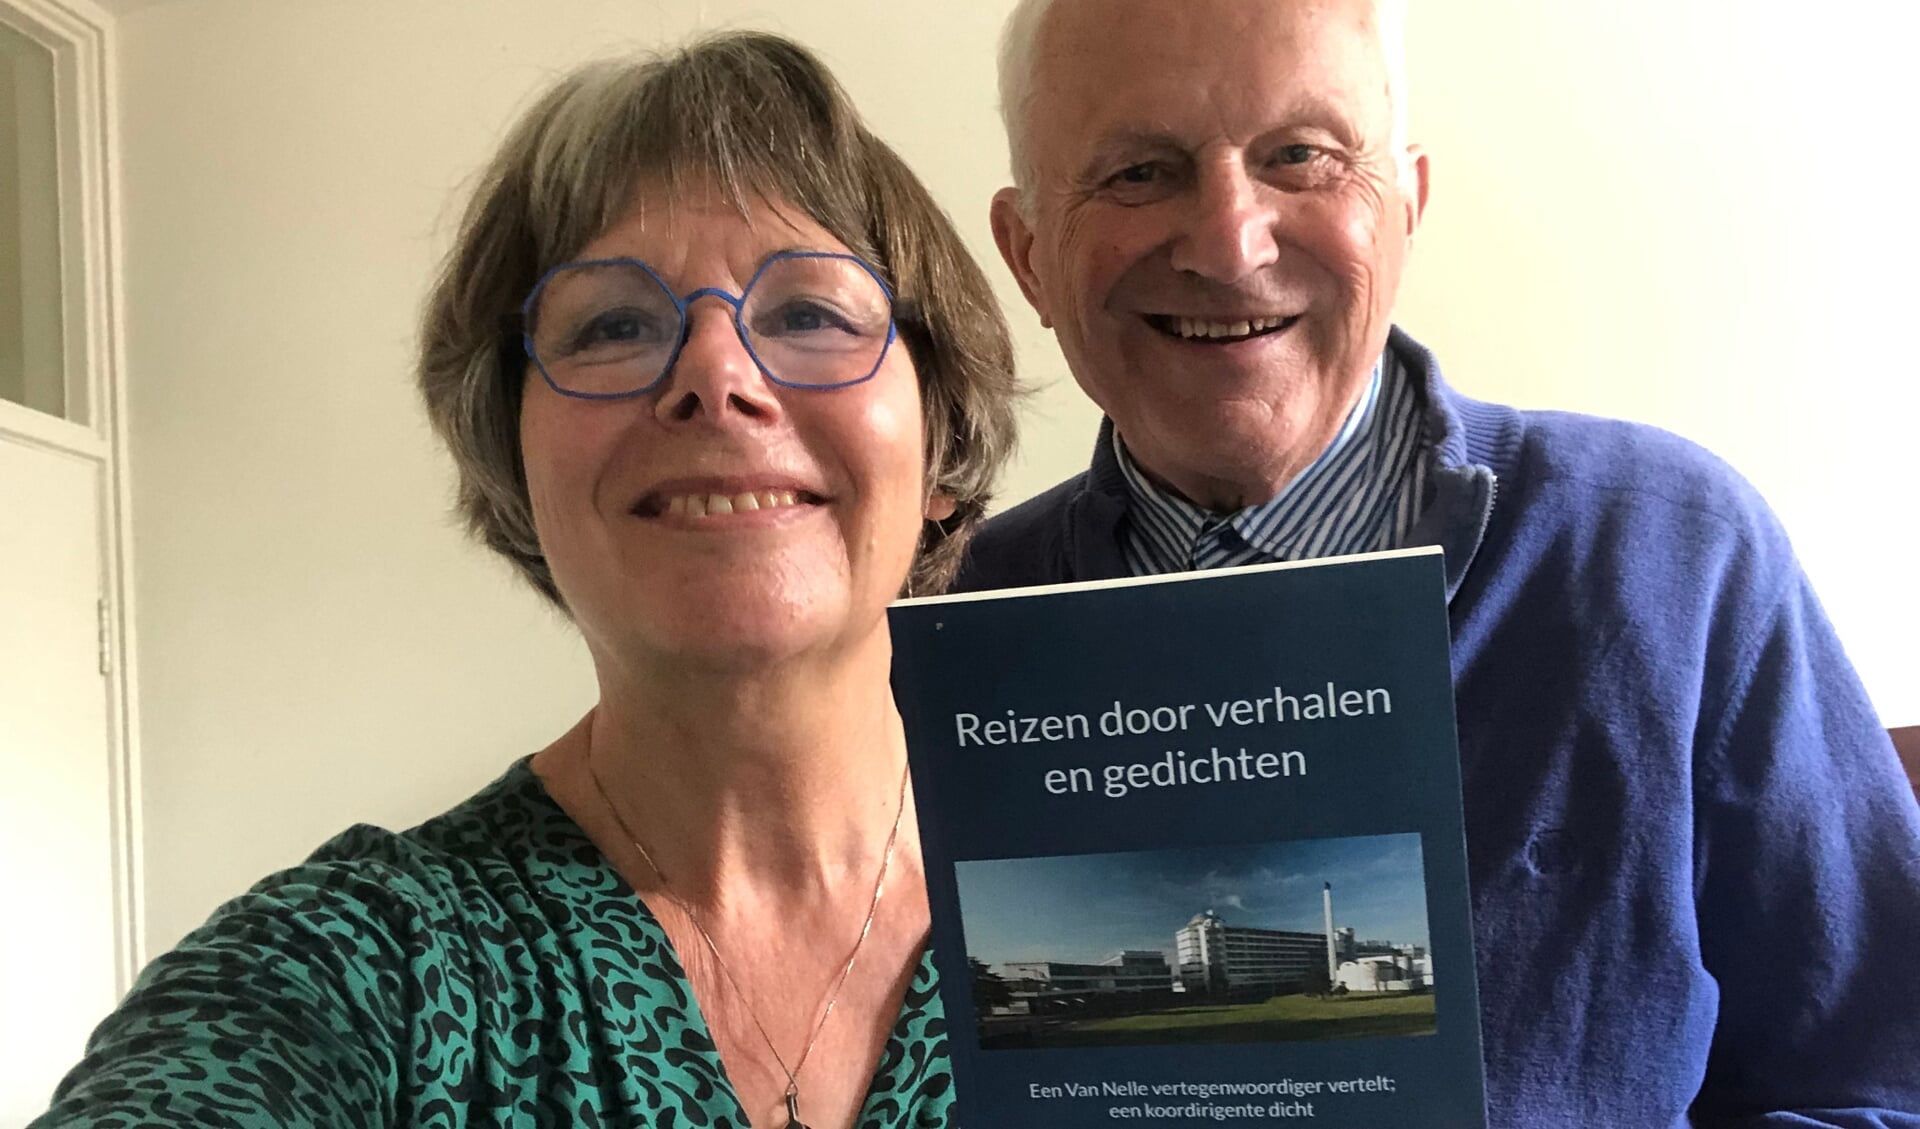 Hendrik en Marianne Weenink met hun nieuwste boek ‘Reizen door verhalen en gedichten’. Foto: PR